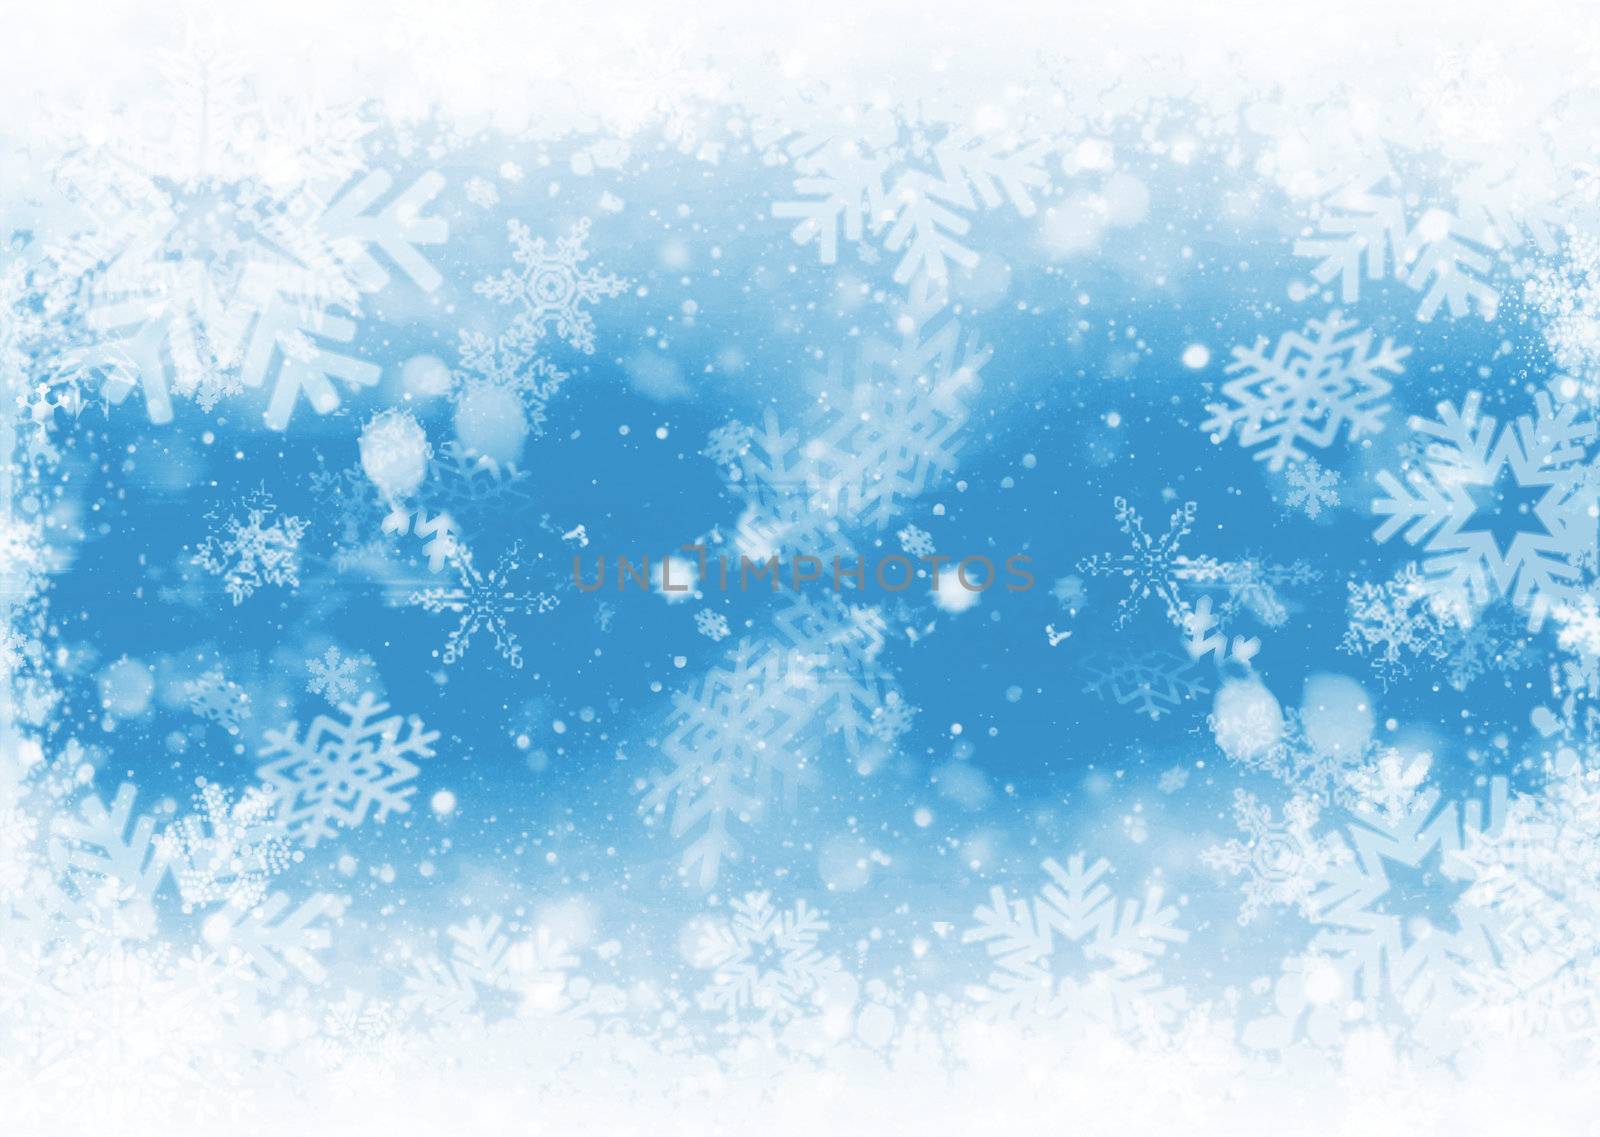 Snowflakes by kjpargeter